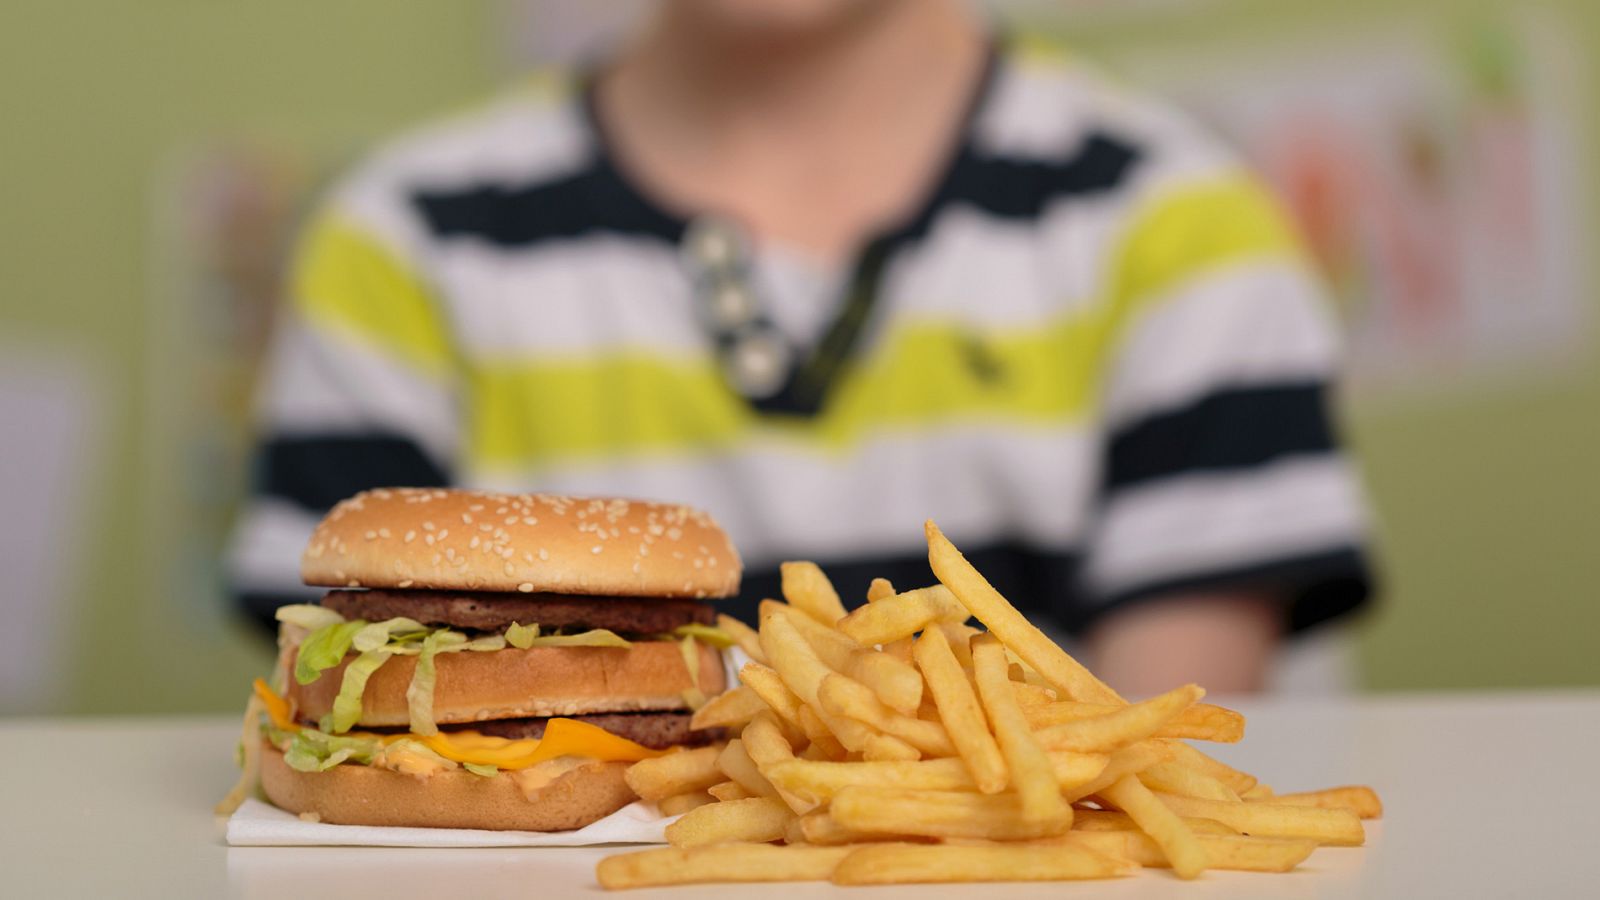 Trump quiere que los escolares puedan elegir entre verdura o hamburguesa - RTVE.es